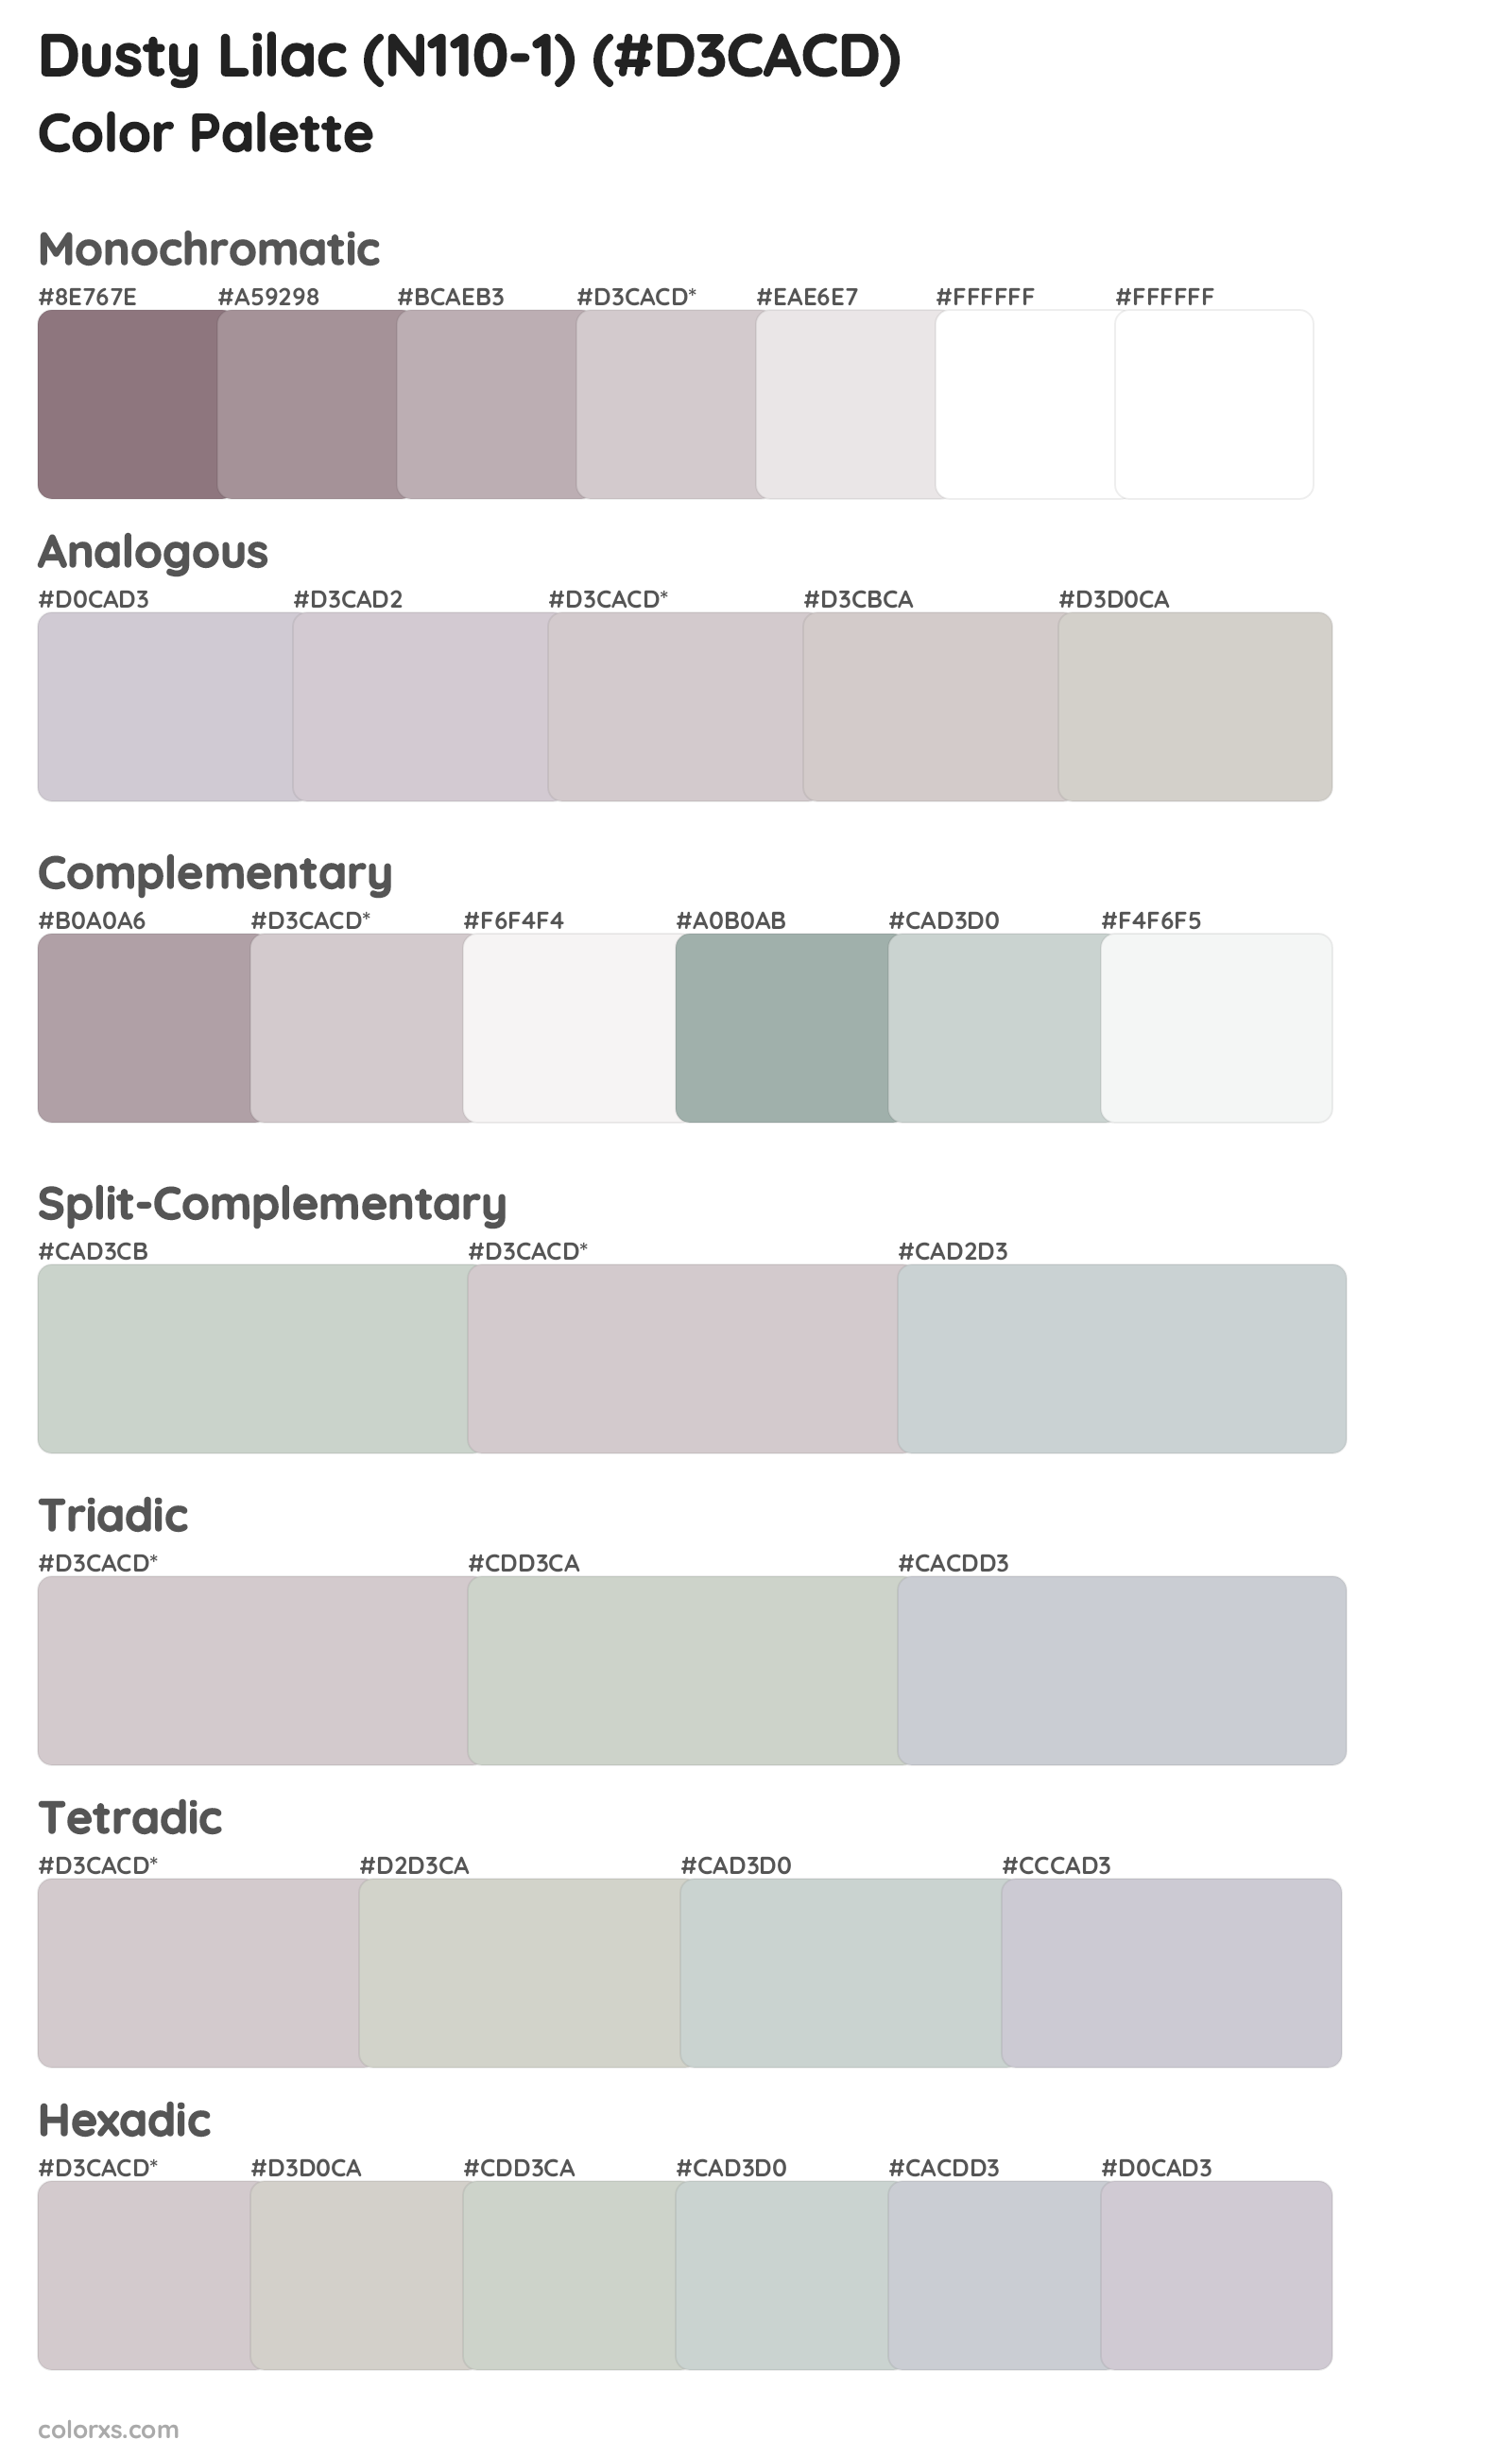 Dusty Lilac (N110-1) Color Scheme Palettes